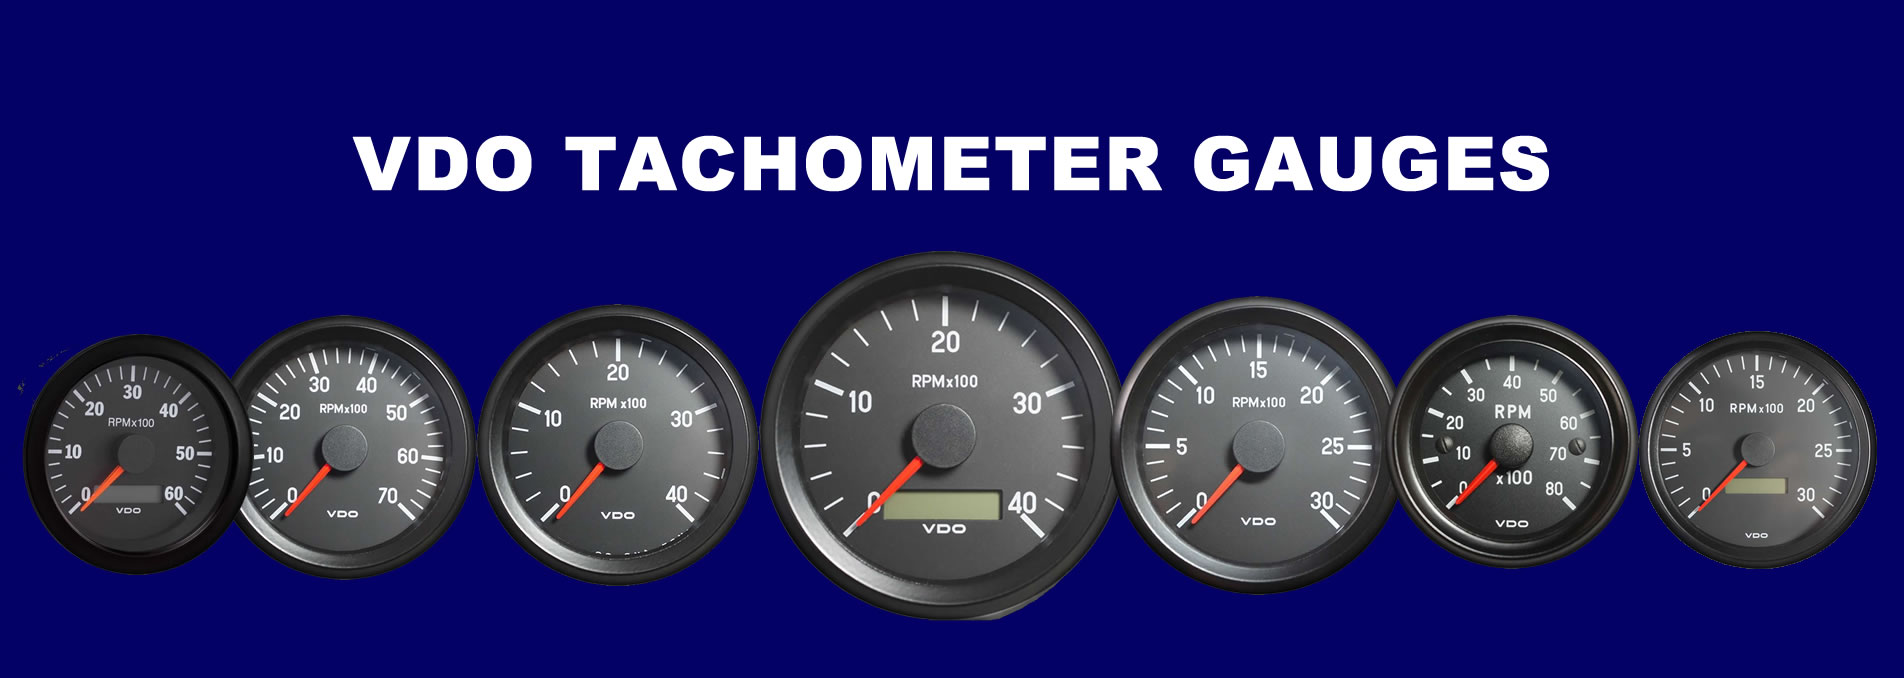 vdo tachometer gauges banner